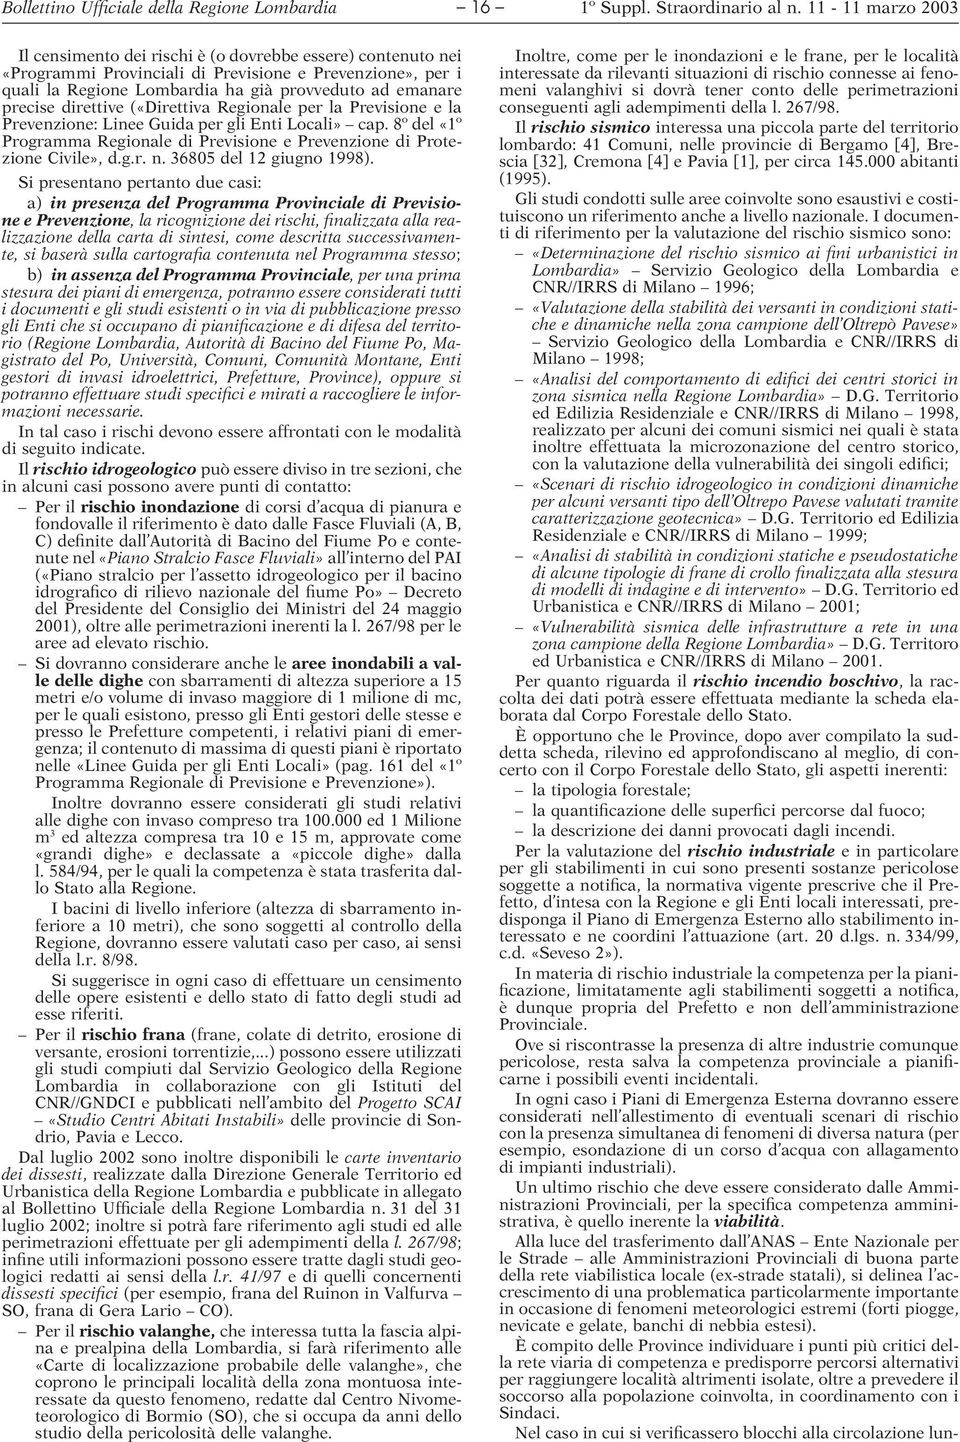 8º del «1º Programma Regionale di Previsione e Prevenzione di Protezione Civile», d.g.r. n. 36805 del 12 giugno 1998).